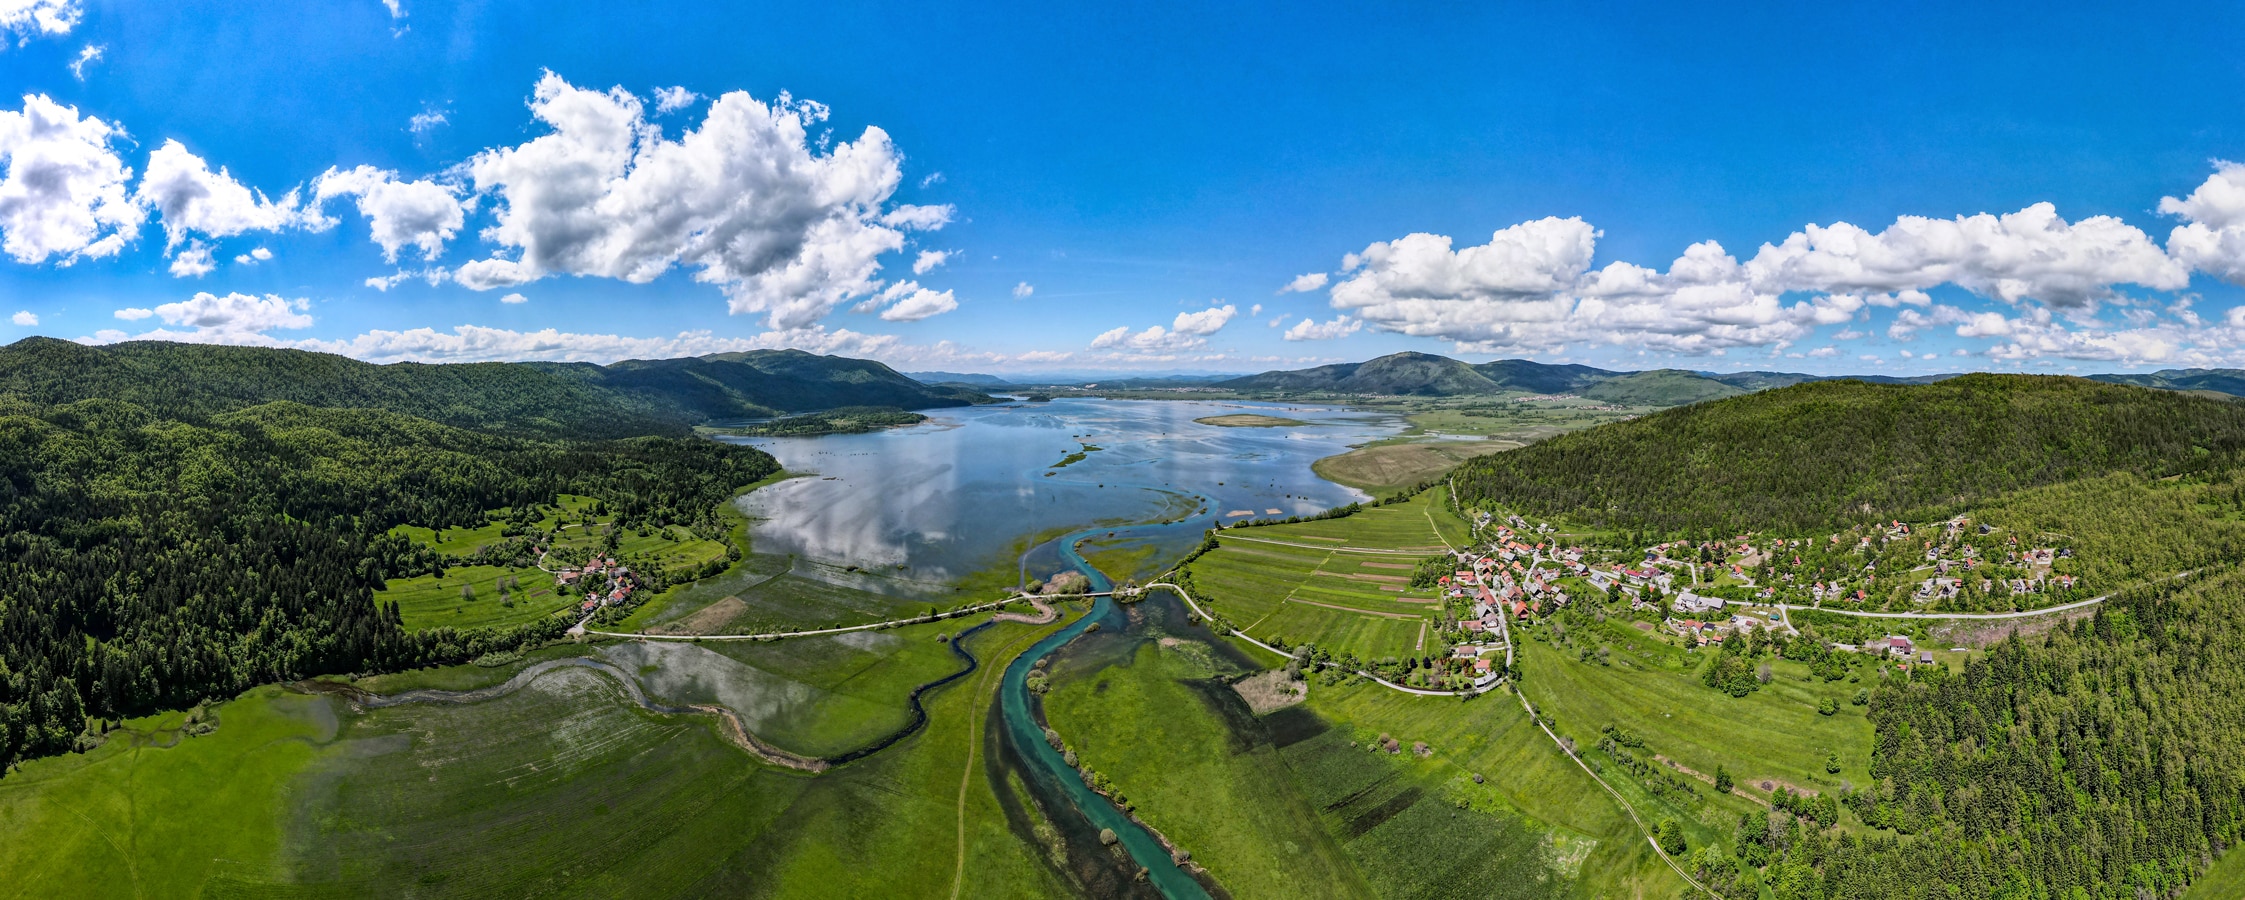 Slovinský kras - Cerknické jezero